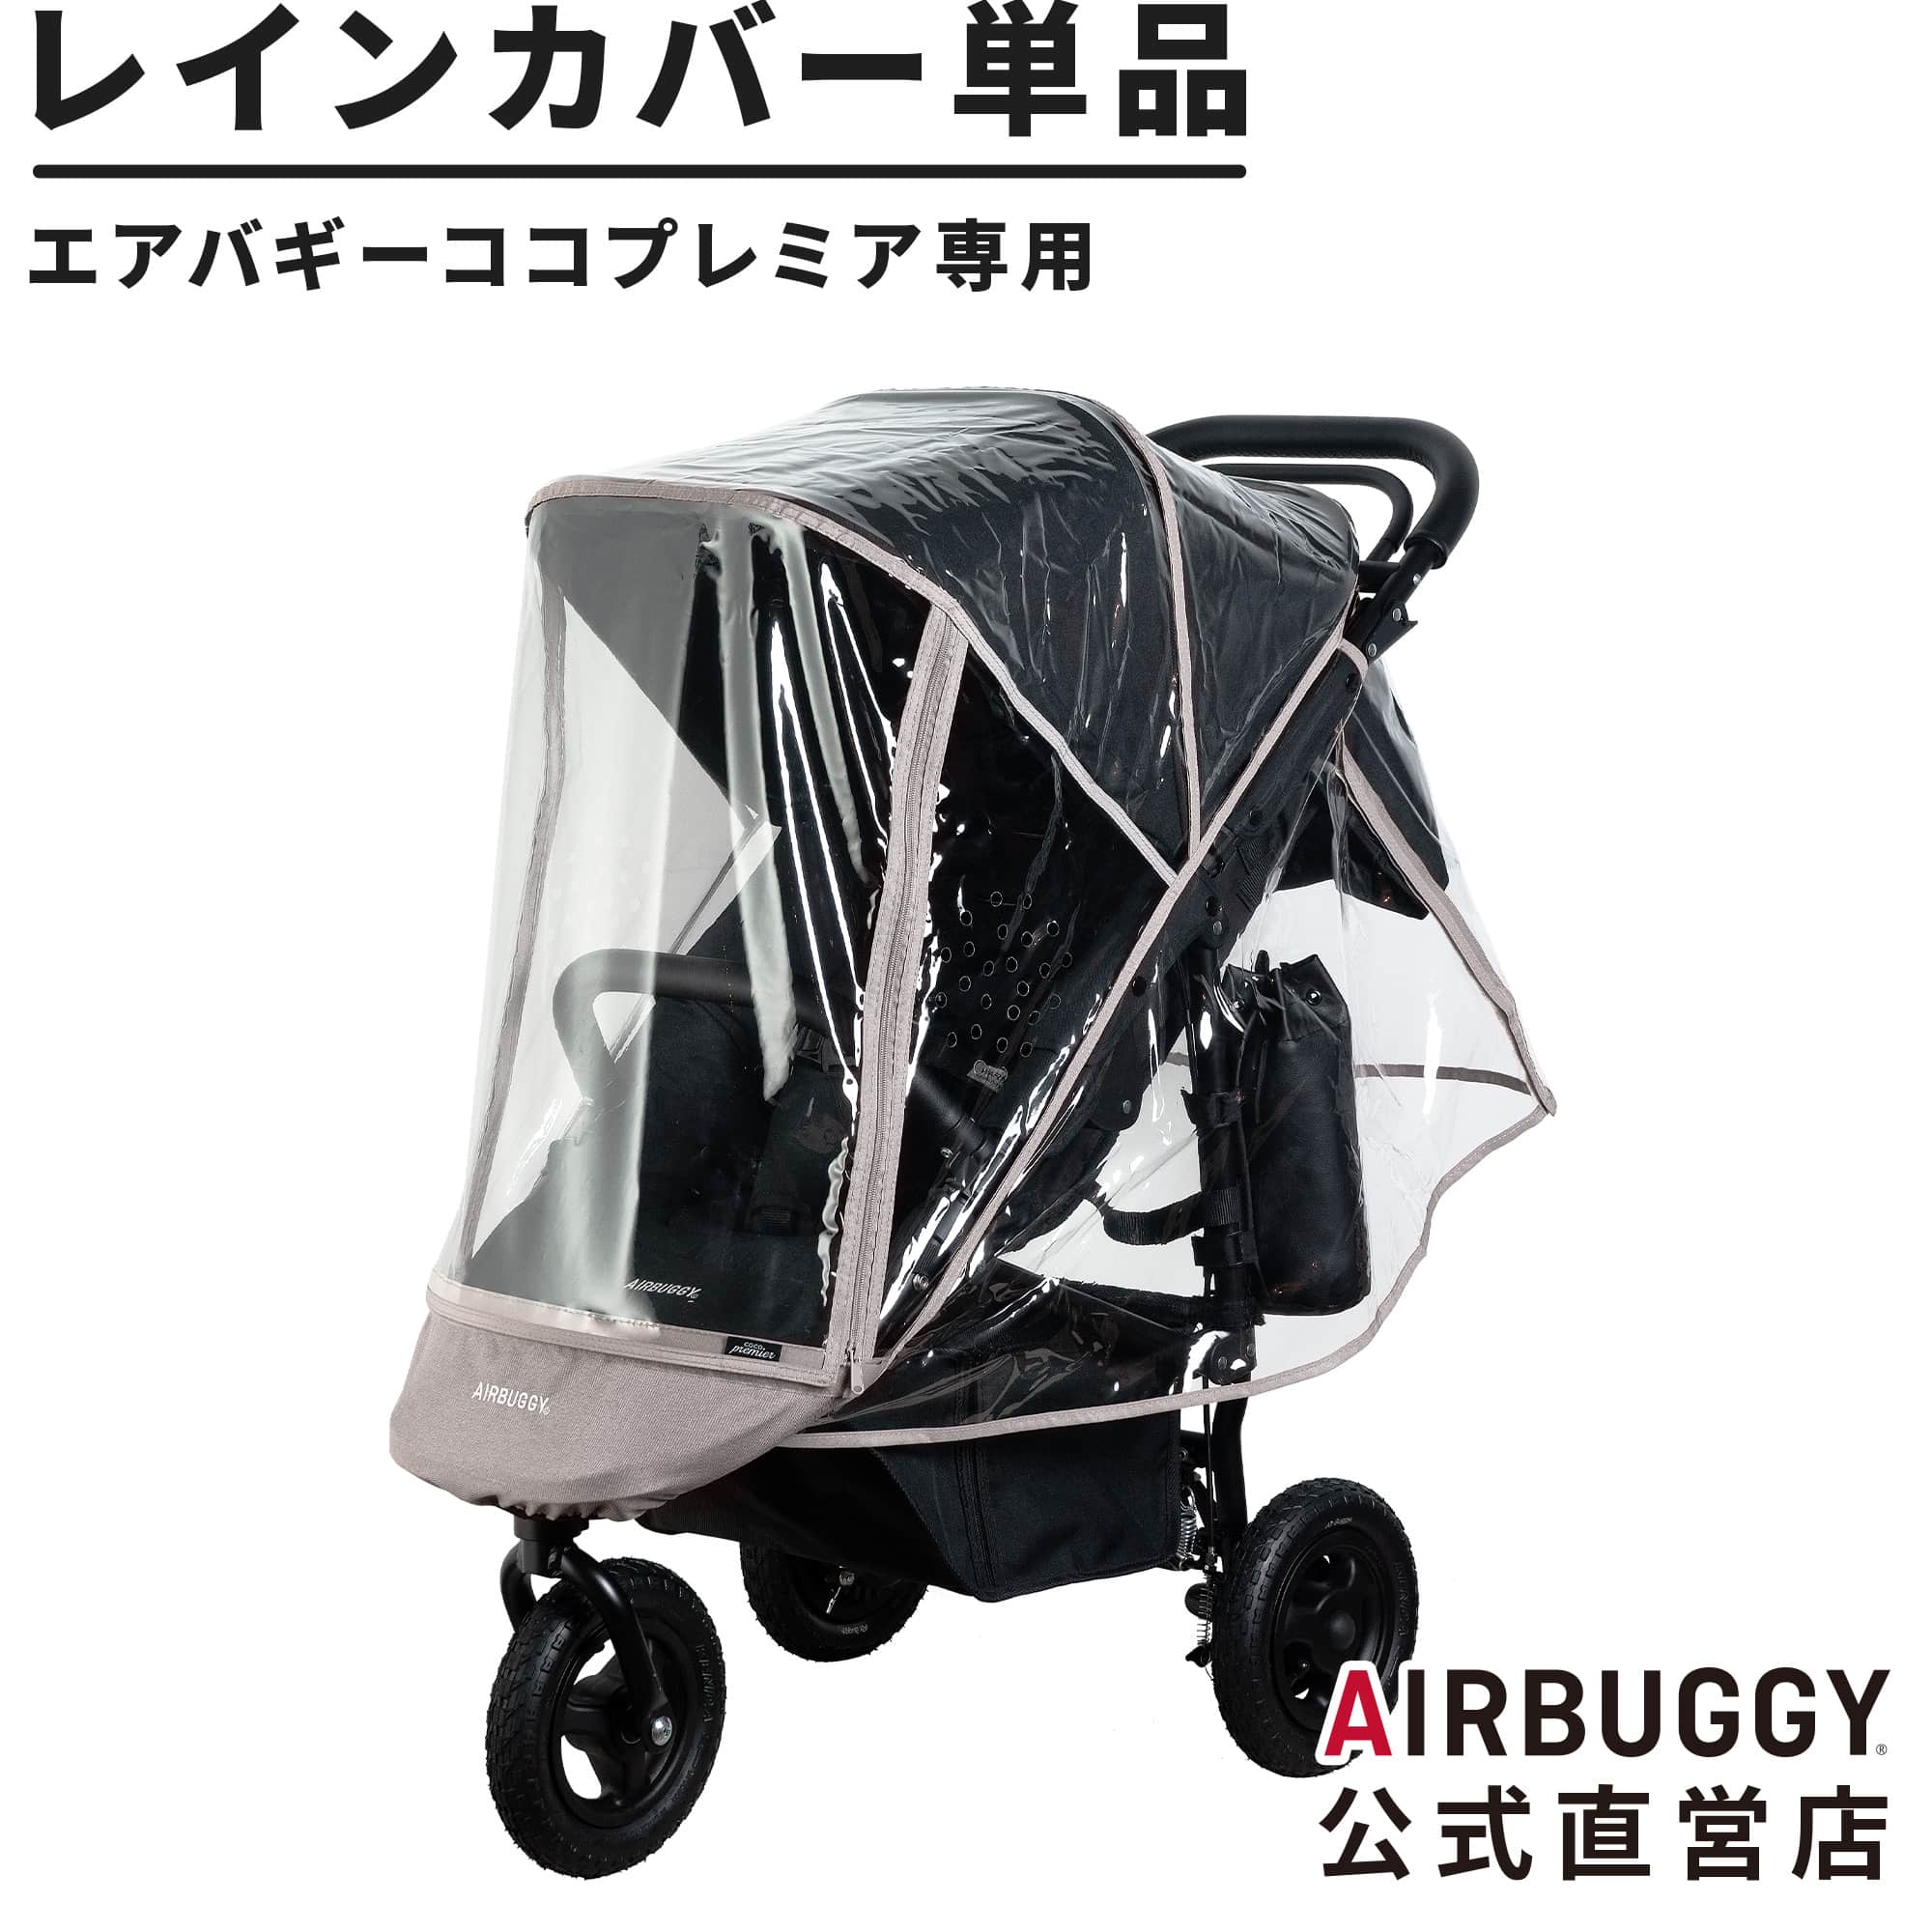 【楽天市場】エアバギー ココブレーキシリーズ専用 レインカバー 